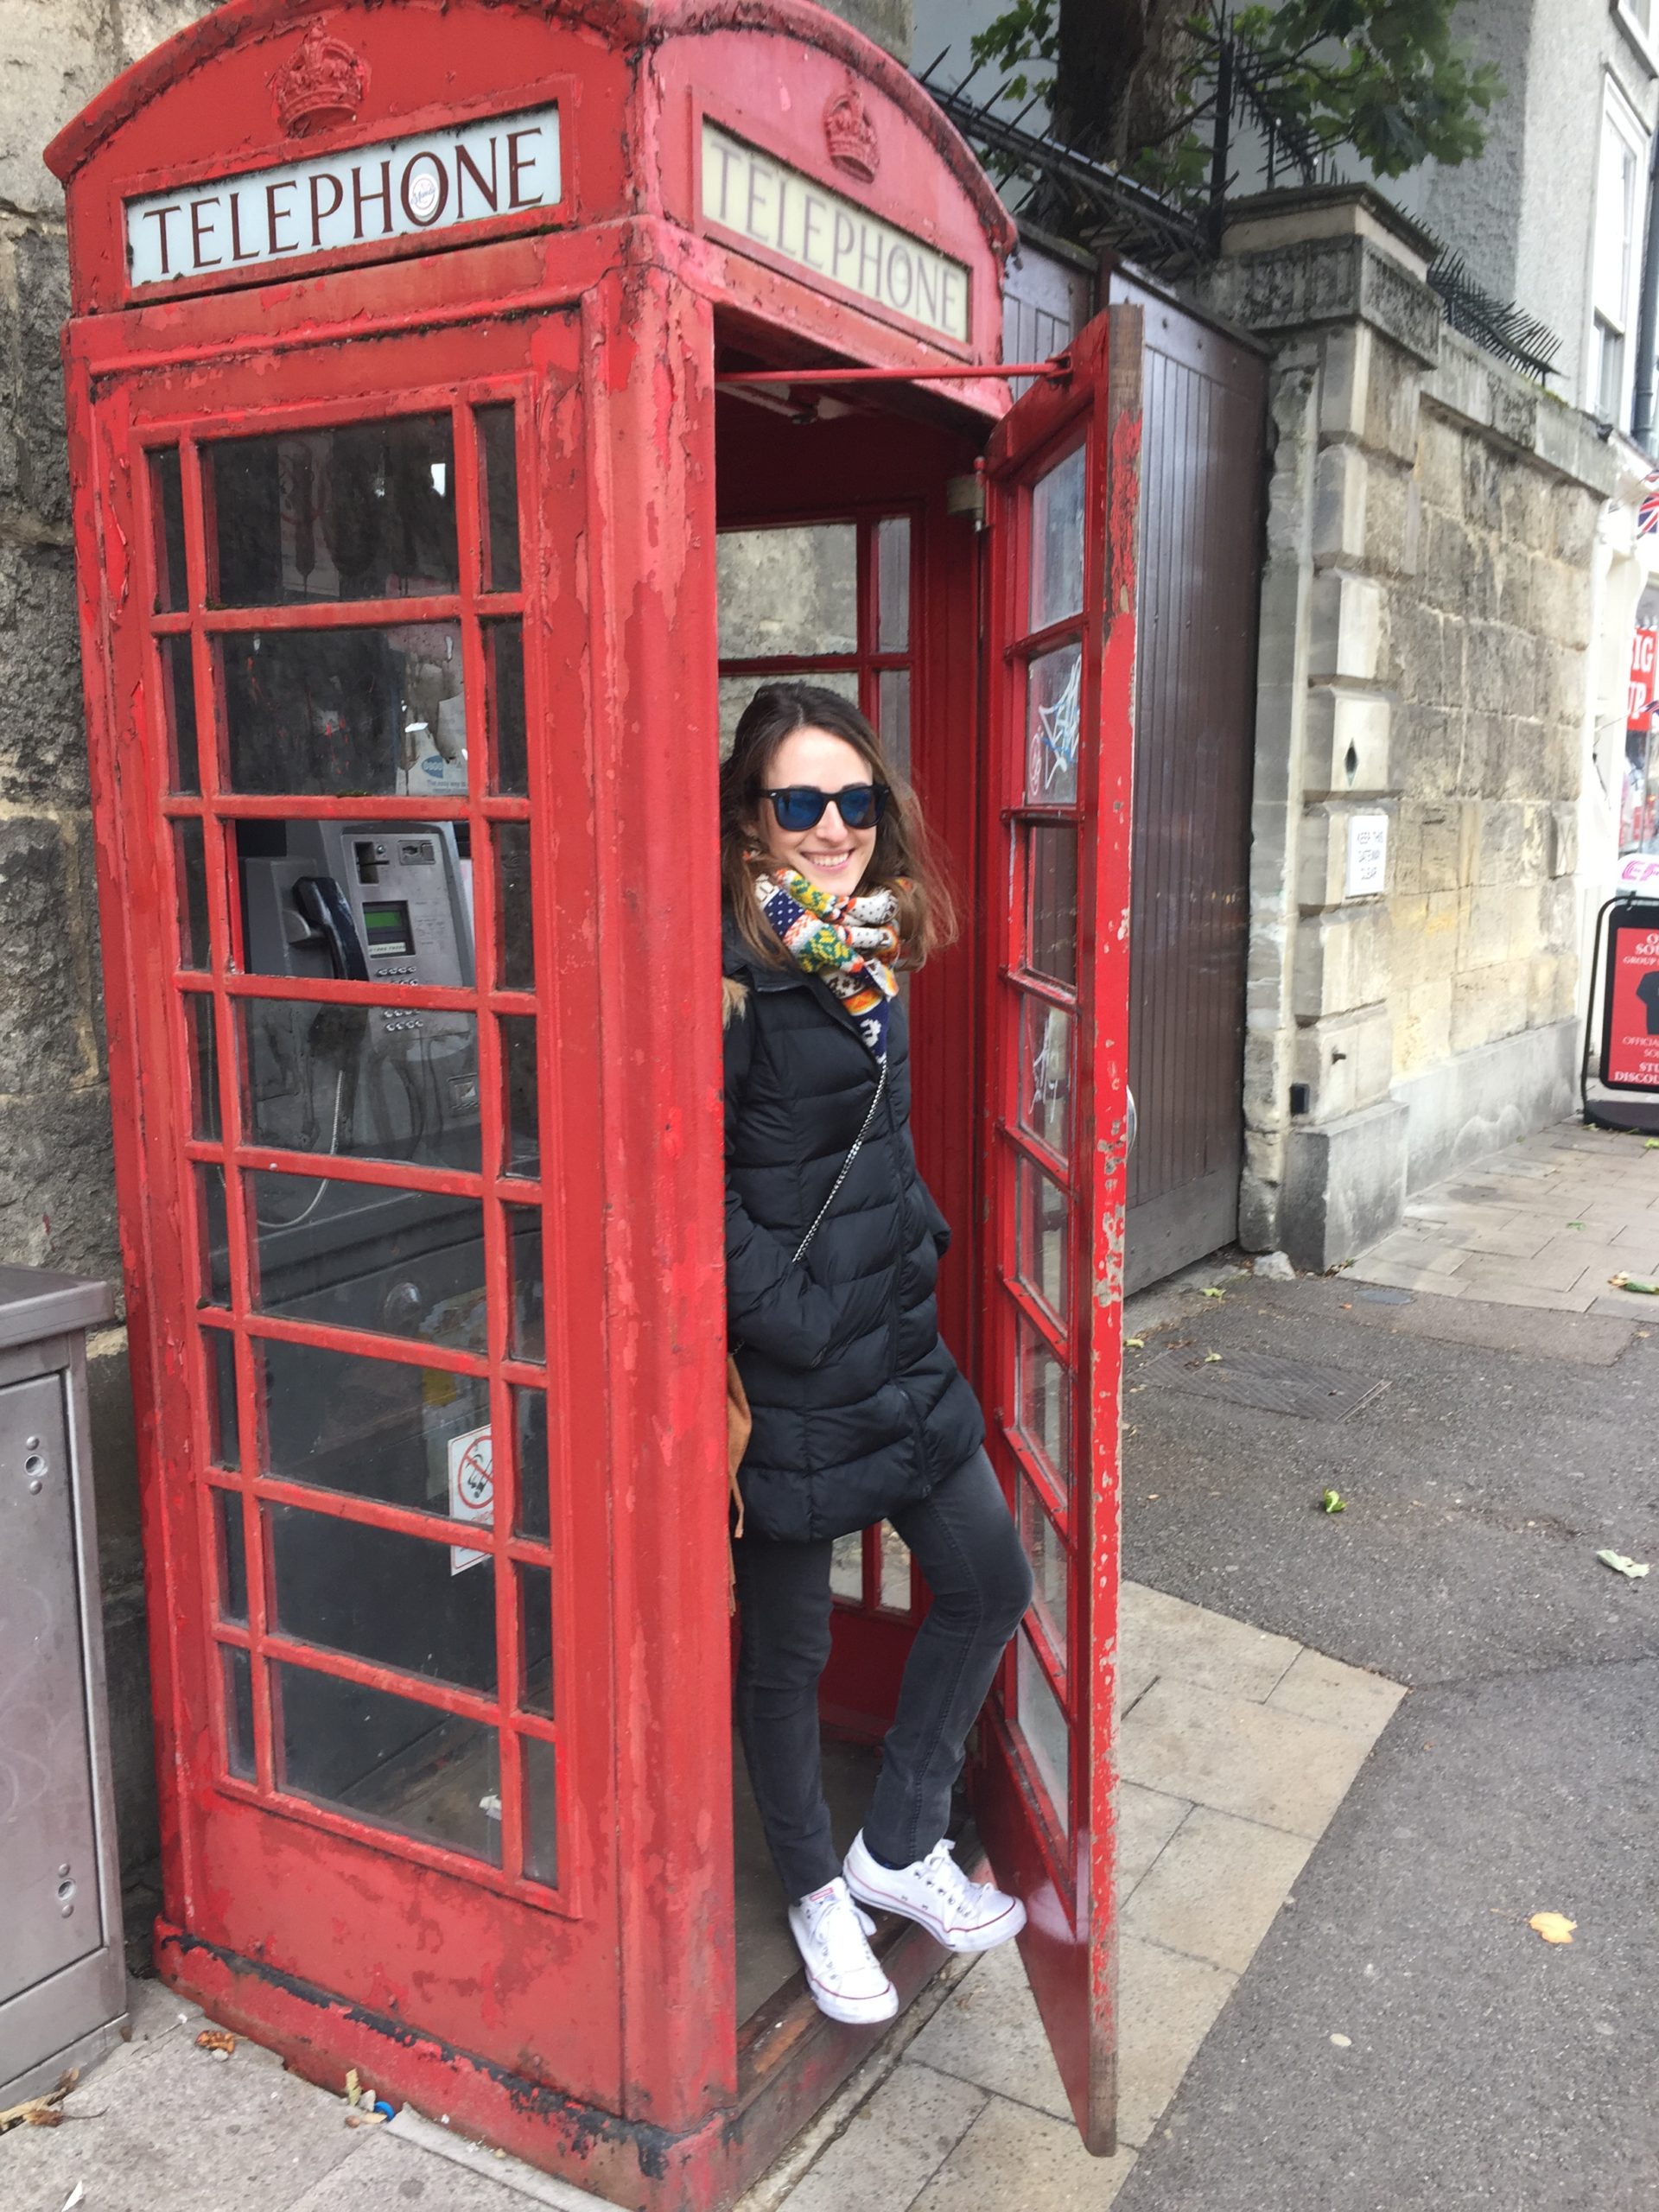 Posing at a telephone box